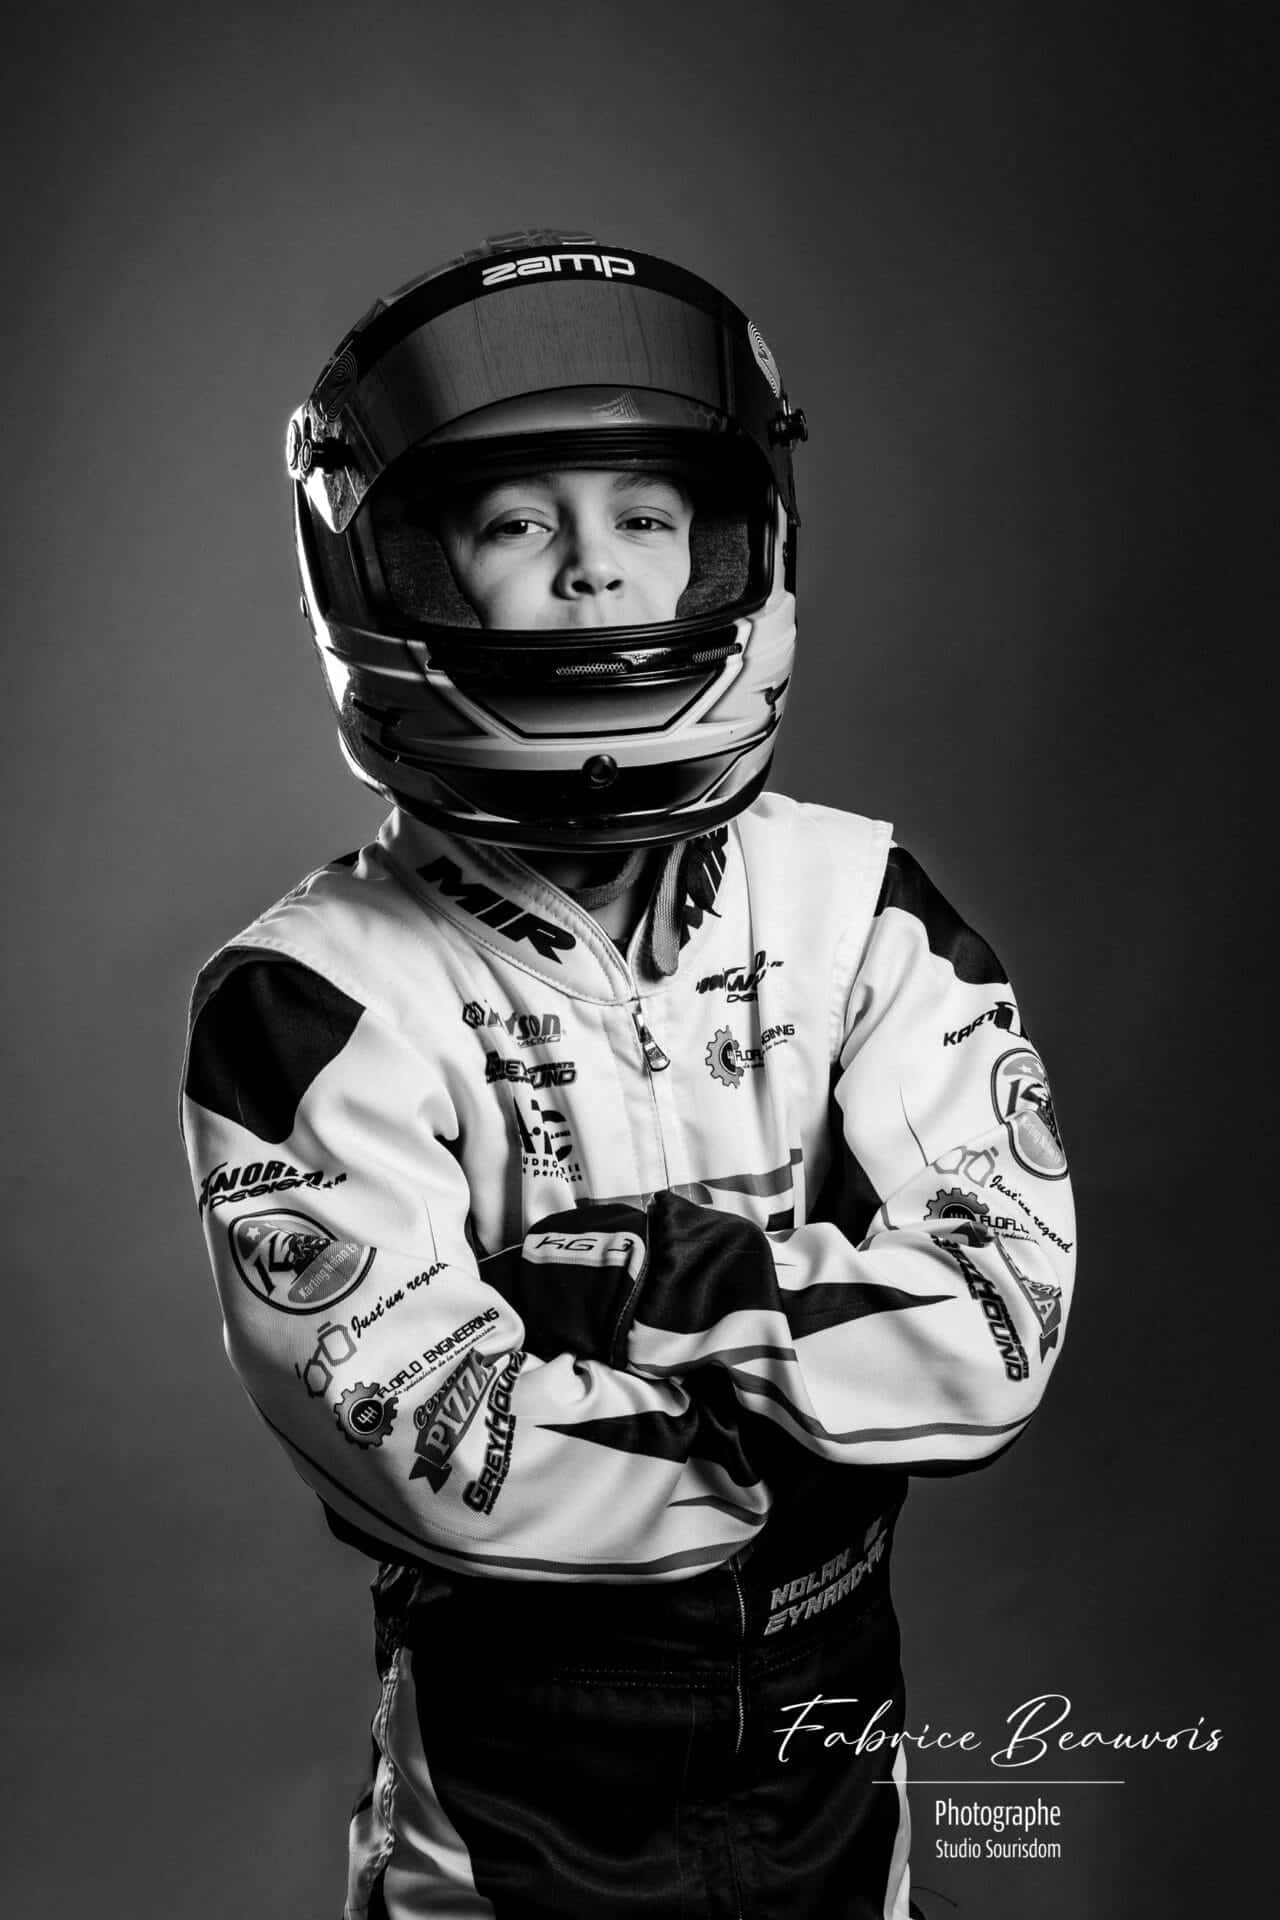 Illustration portrait en noir et blanc d'un champion de kart avec son casque de course